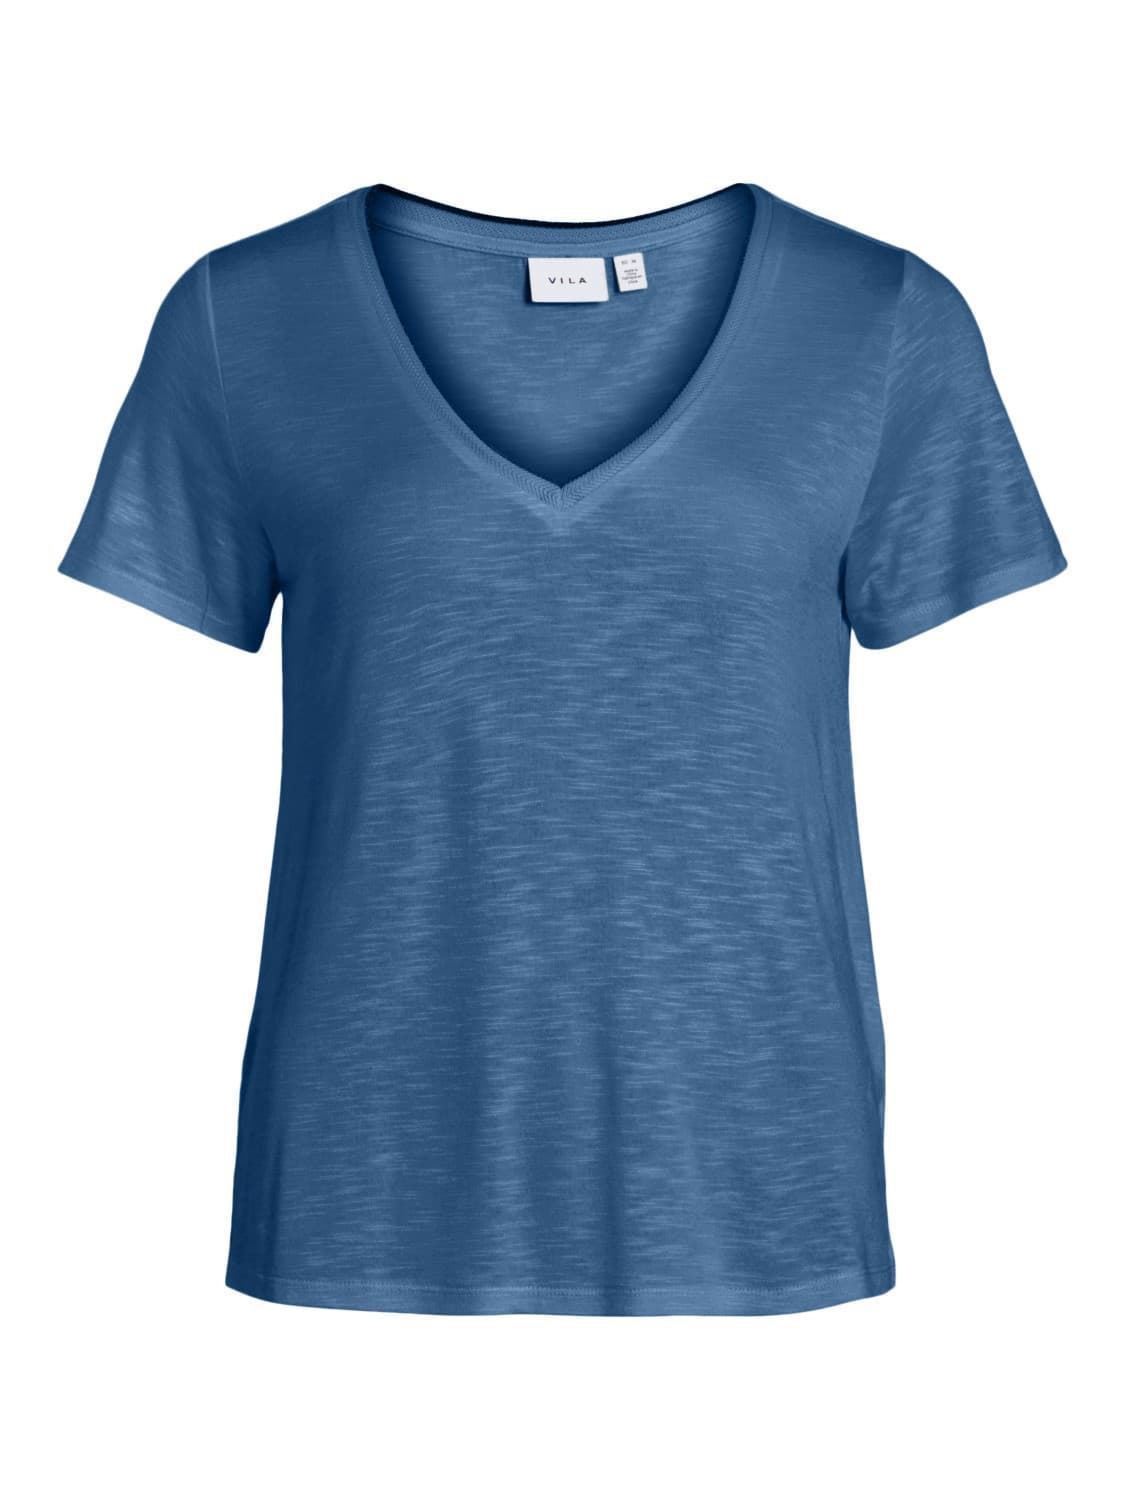 Camiseta azul vinoel - Imagen 4